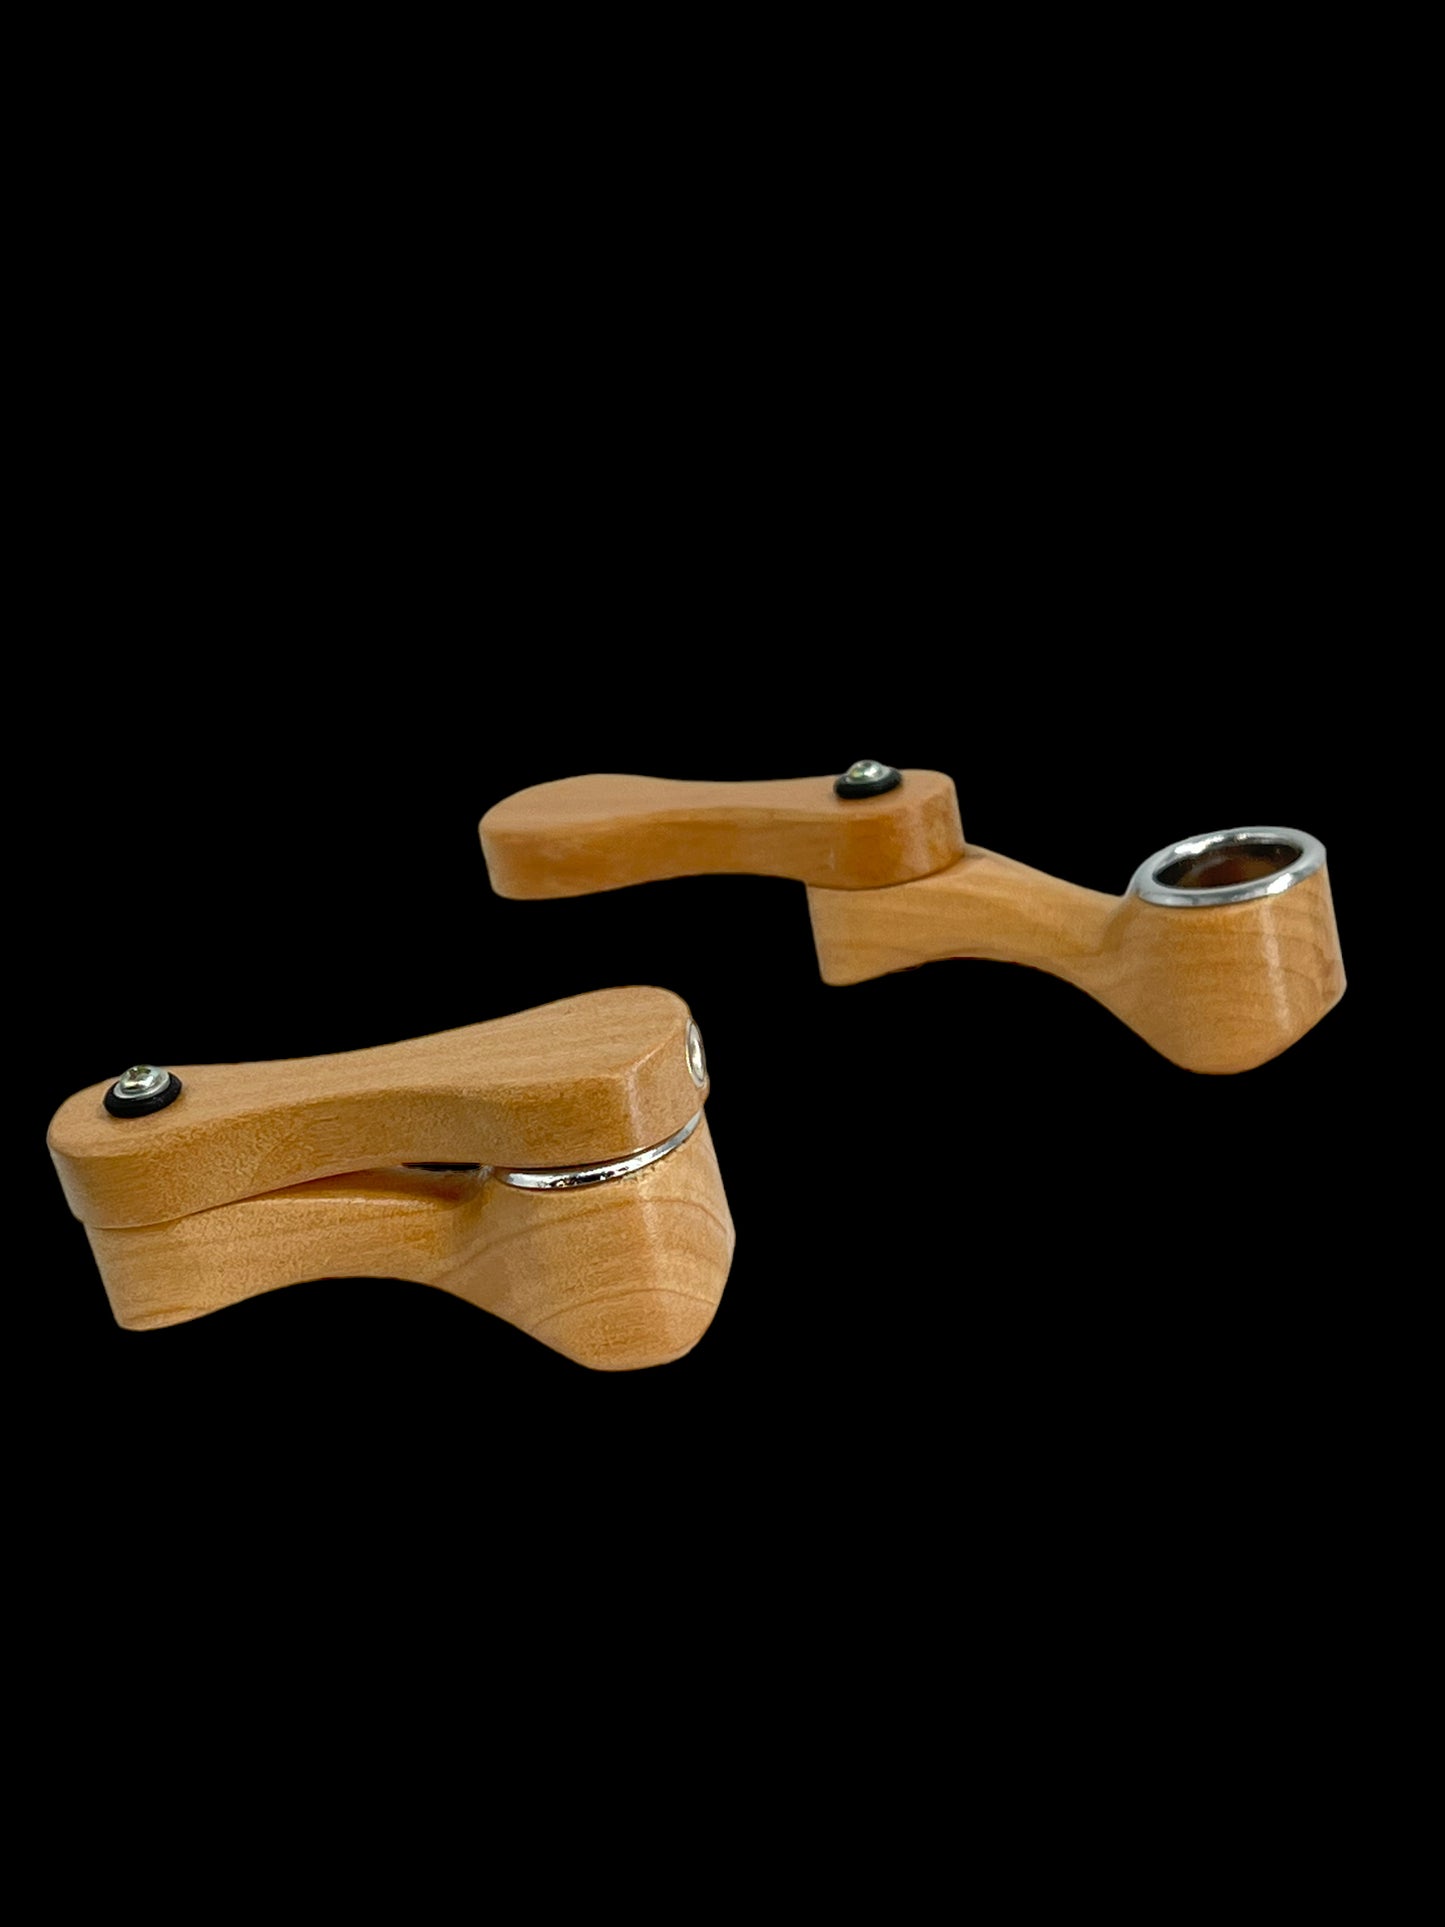 Wooden Sneak-A-Toke Pipe